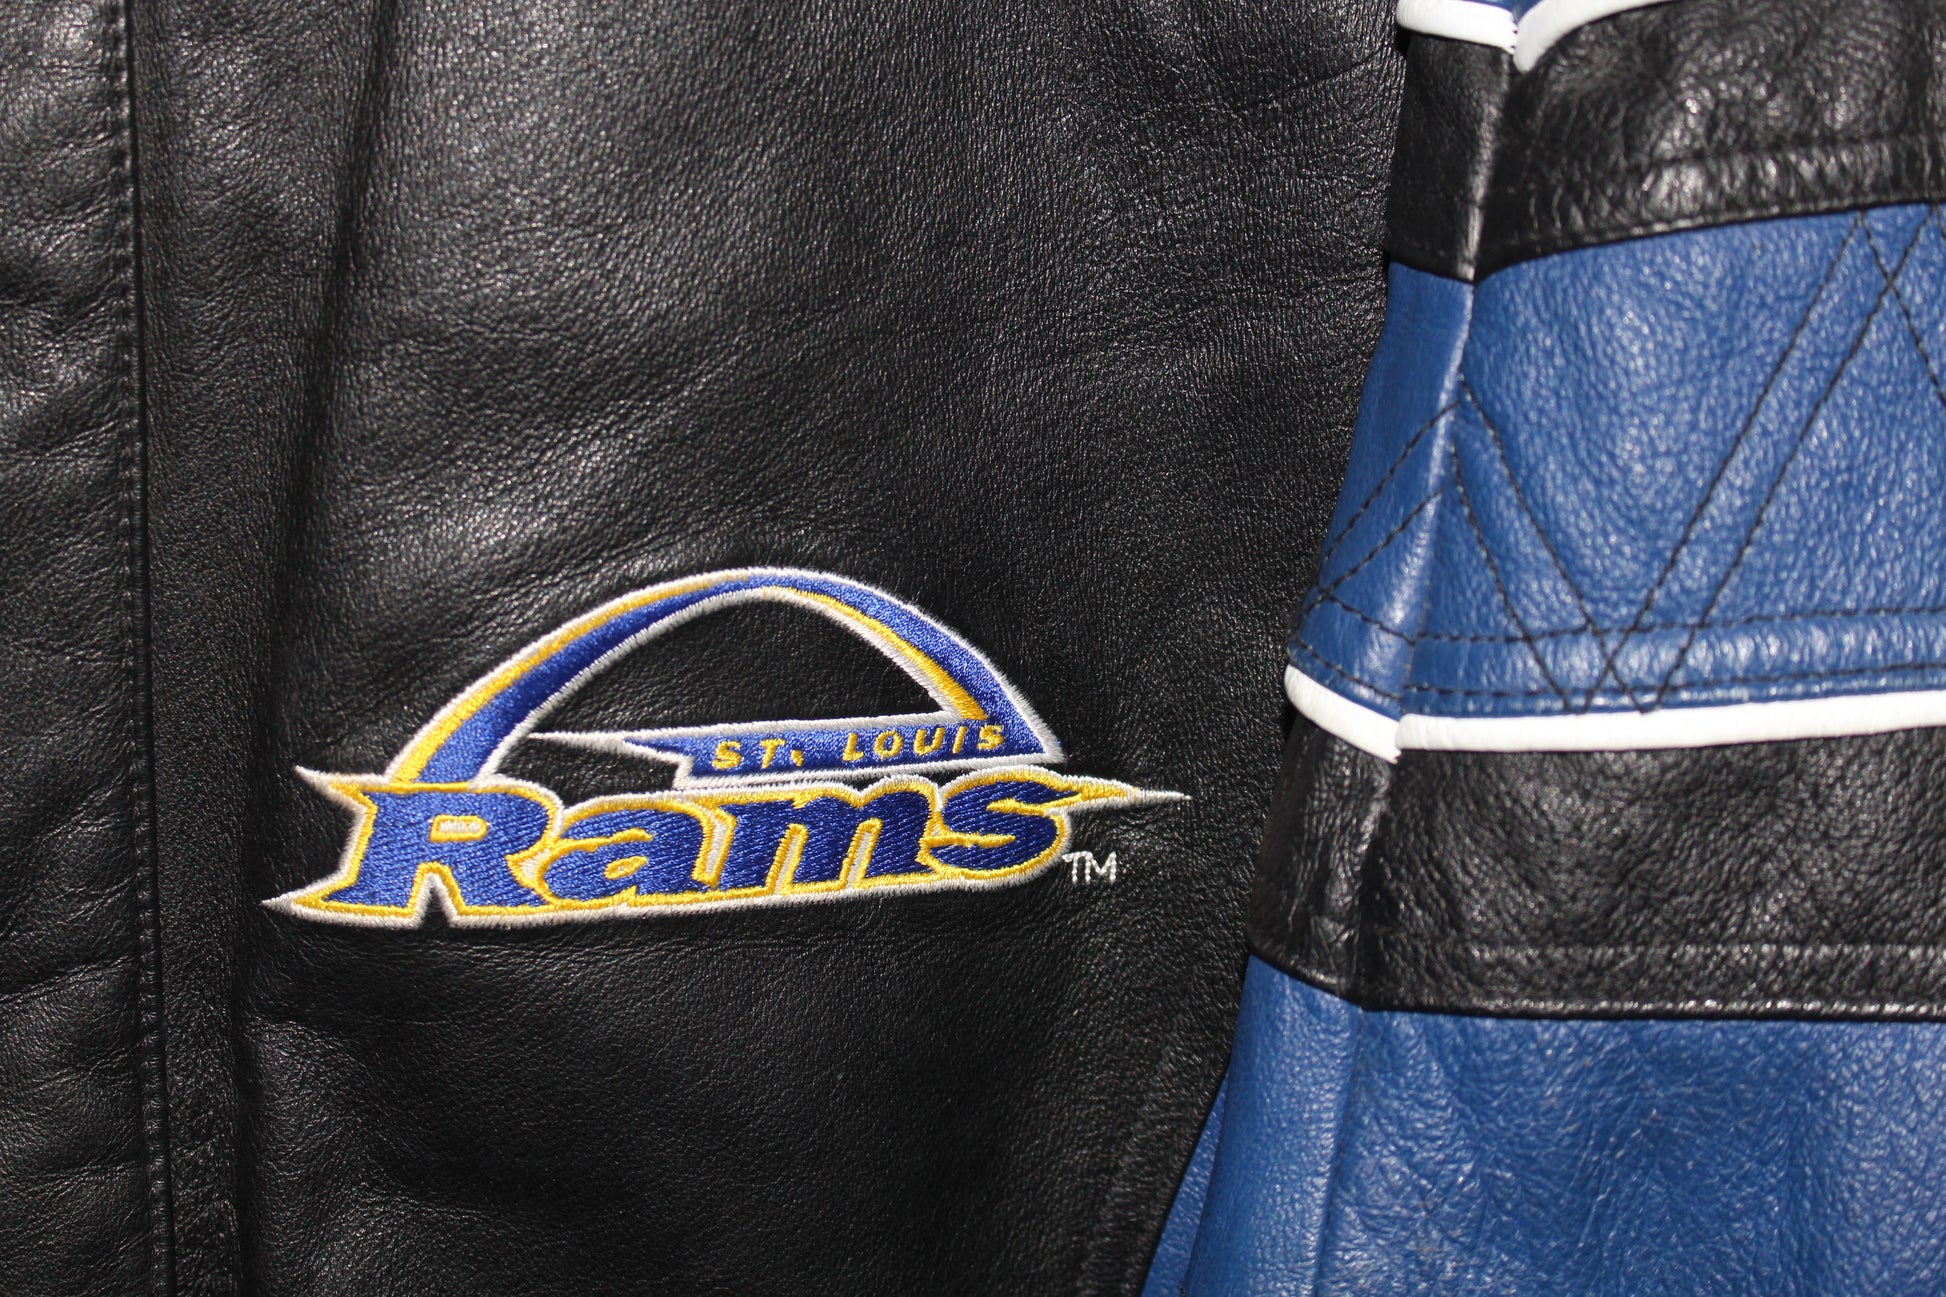 Vintage NFL Team St. Louis Rams Leather Jacket - Maker of Jacket